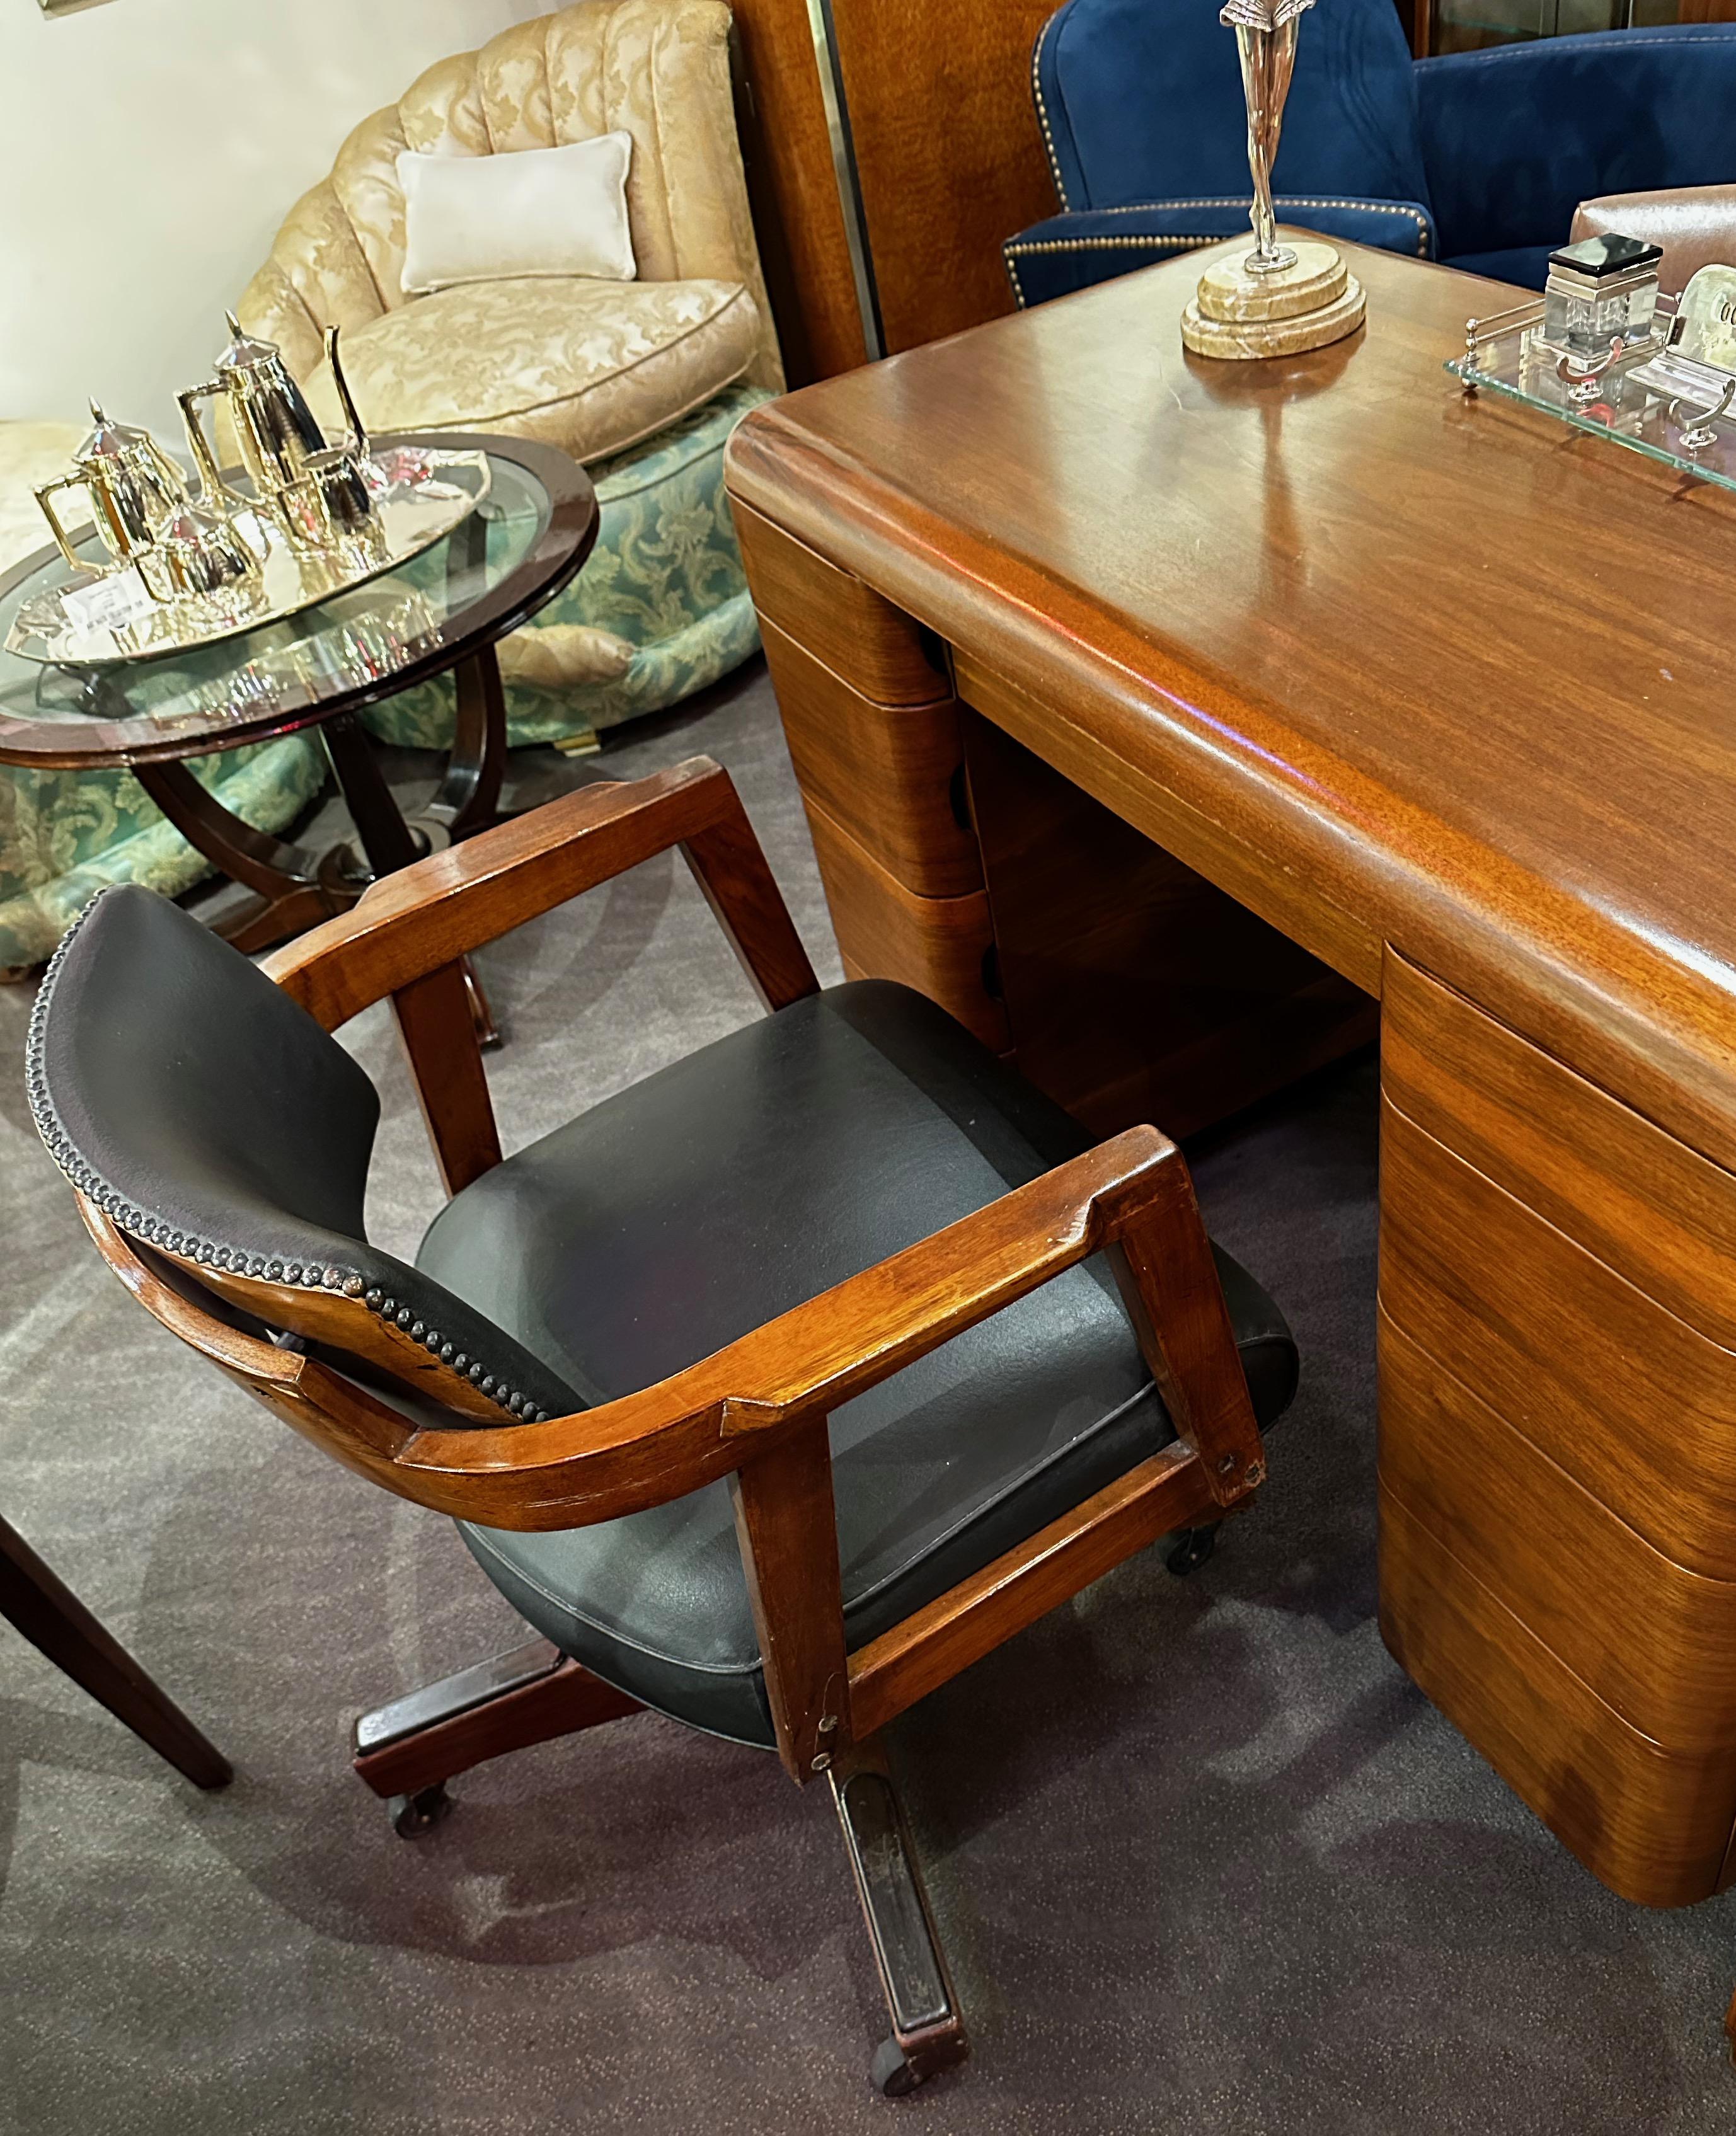 Chaise de bureau Vintage Art of Vintage, restauration ancienne avec hauteur d'assise réglable à partir de la base en bois. Ce fauteuil de bureau classique est prêt à servir encore 50 ans. Le bois a été rafraîchi dans une superbe teinture acajou